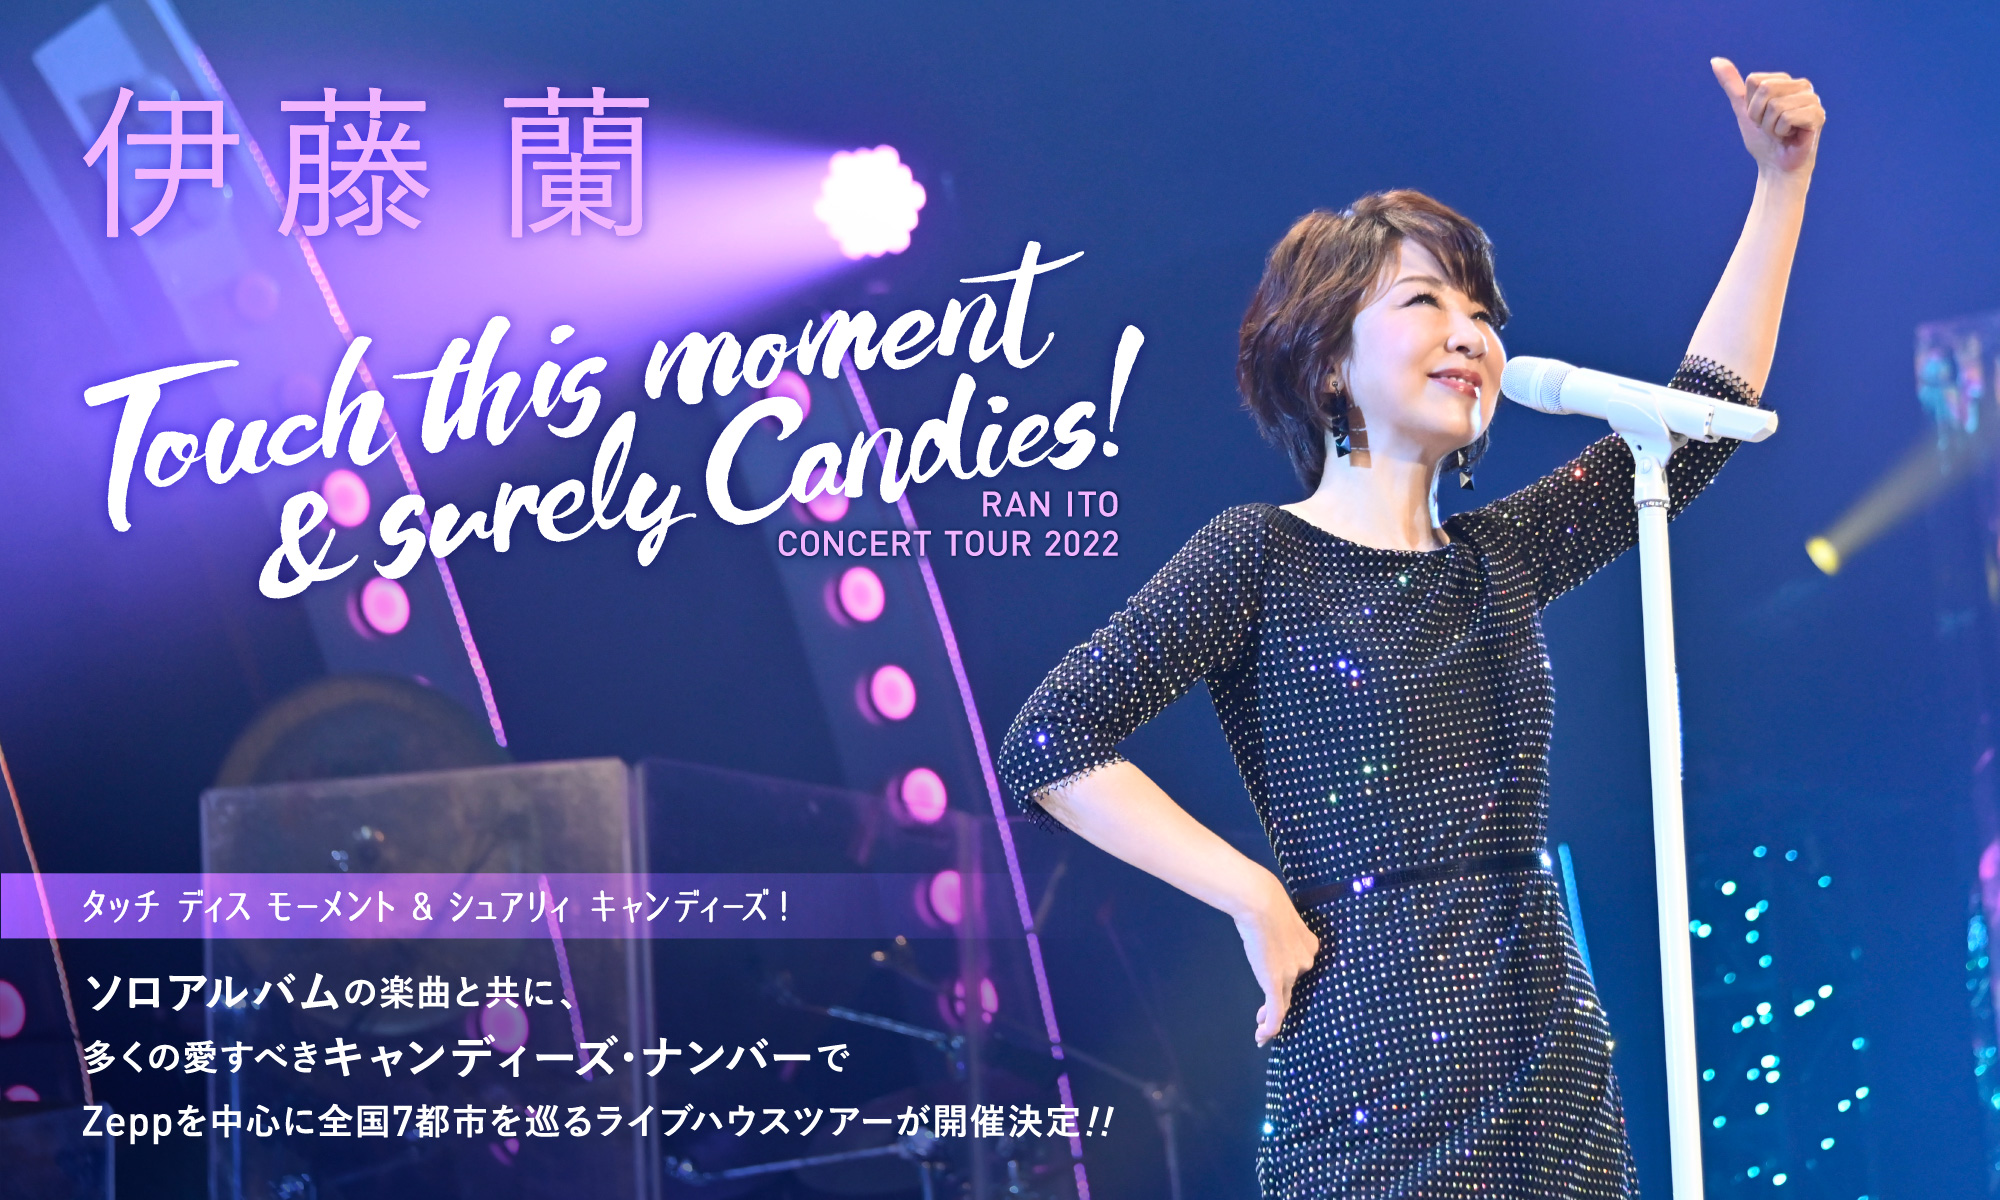 伊藤 蘭コンサート・ツアー2022 〜Touch this moment & surely Candies！〜